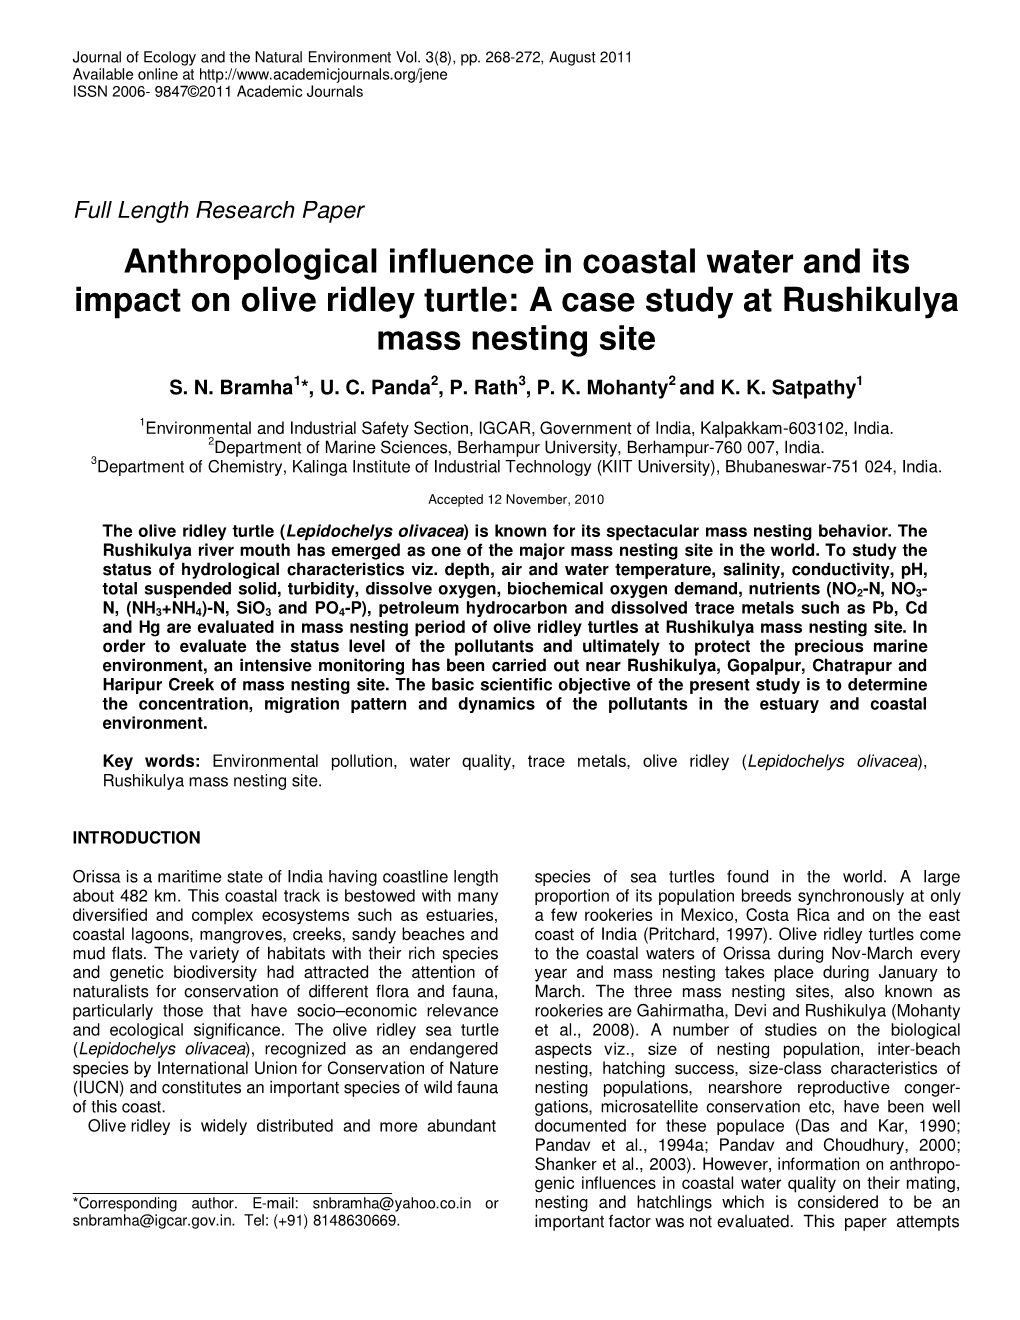 A Case Study at Rushikulya Mass Nesting Site